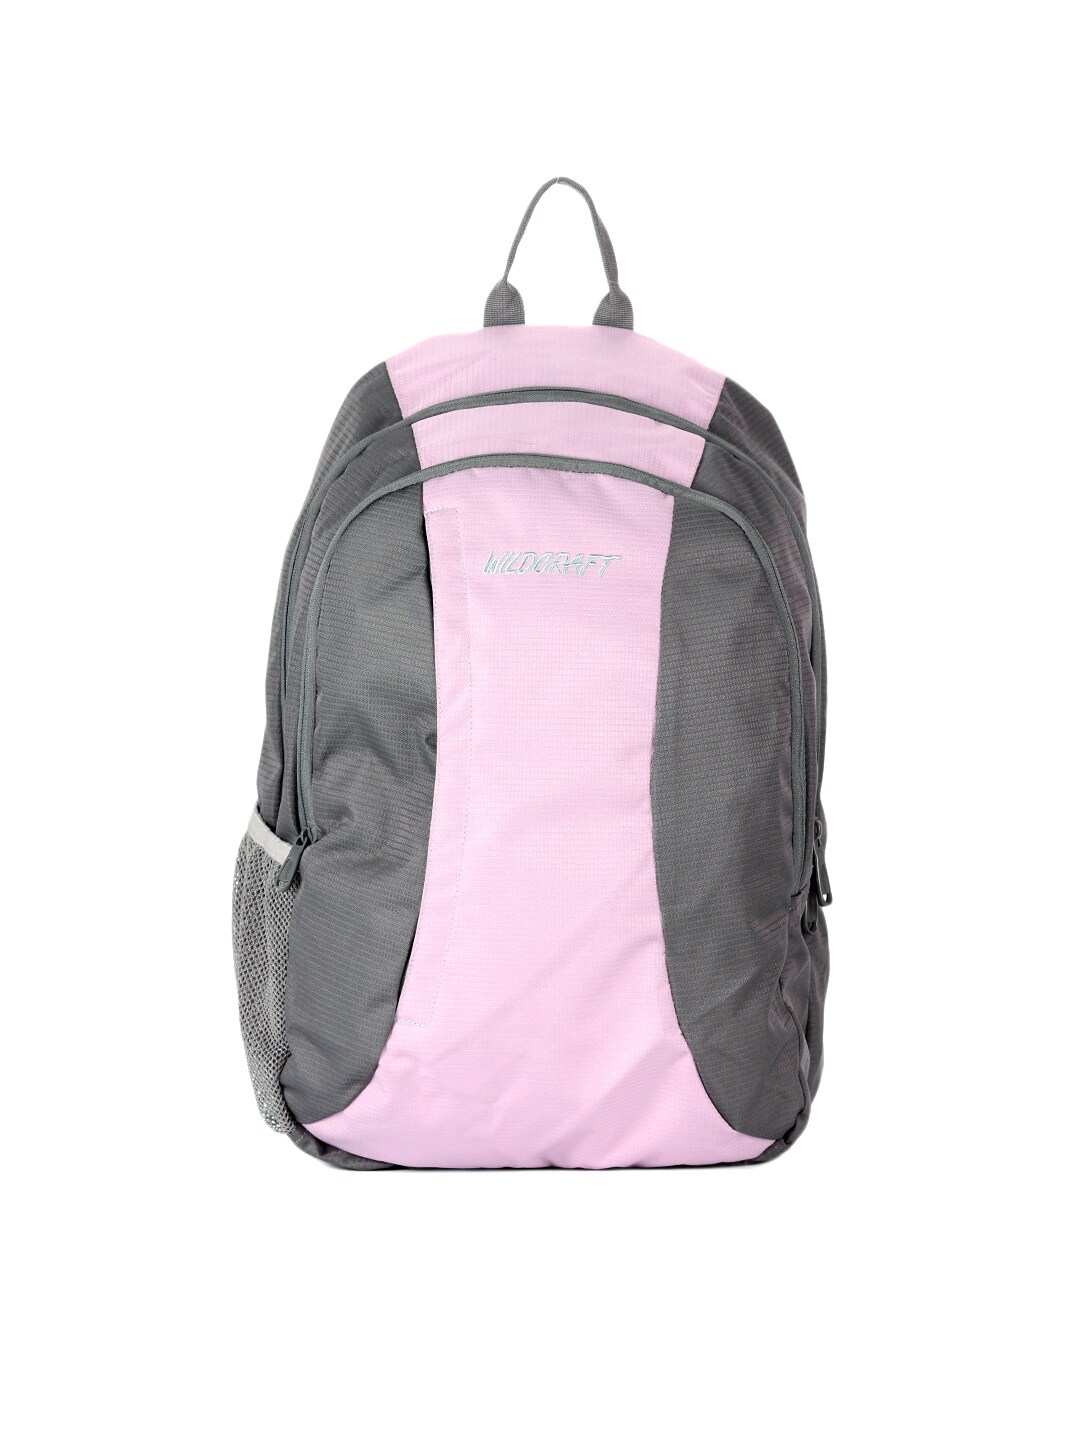 Wildcraft Women Pink & Grey Backpack